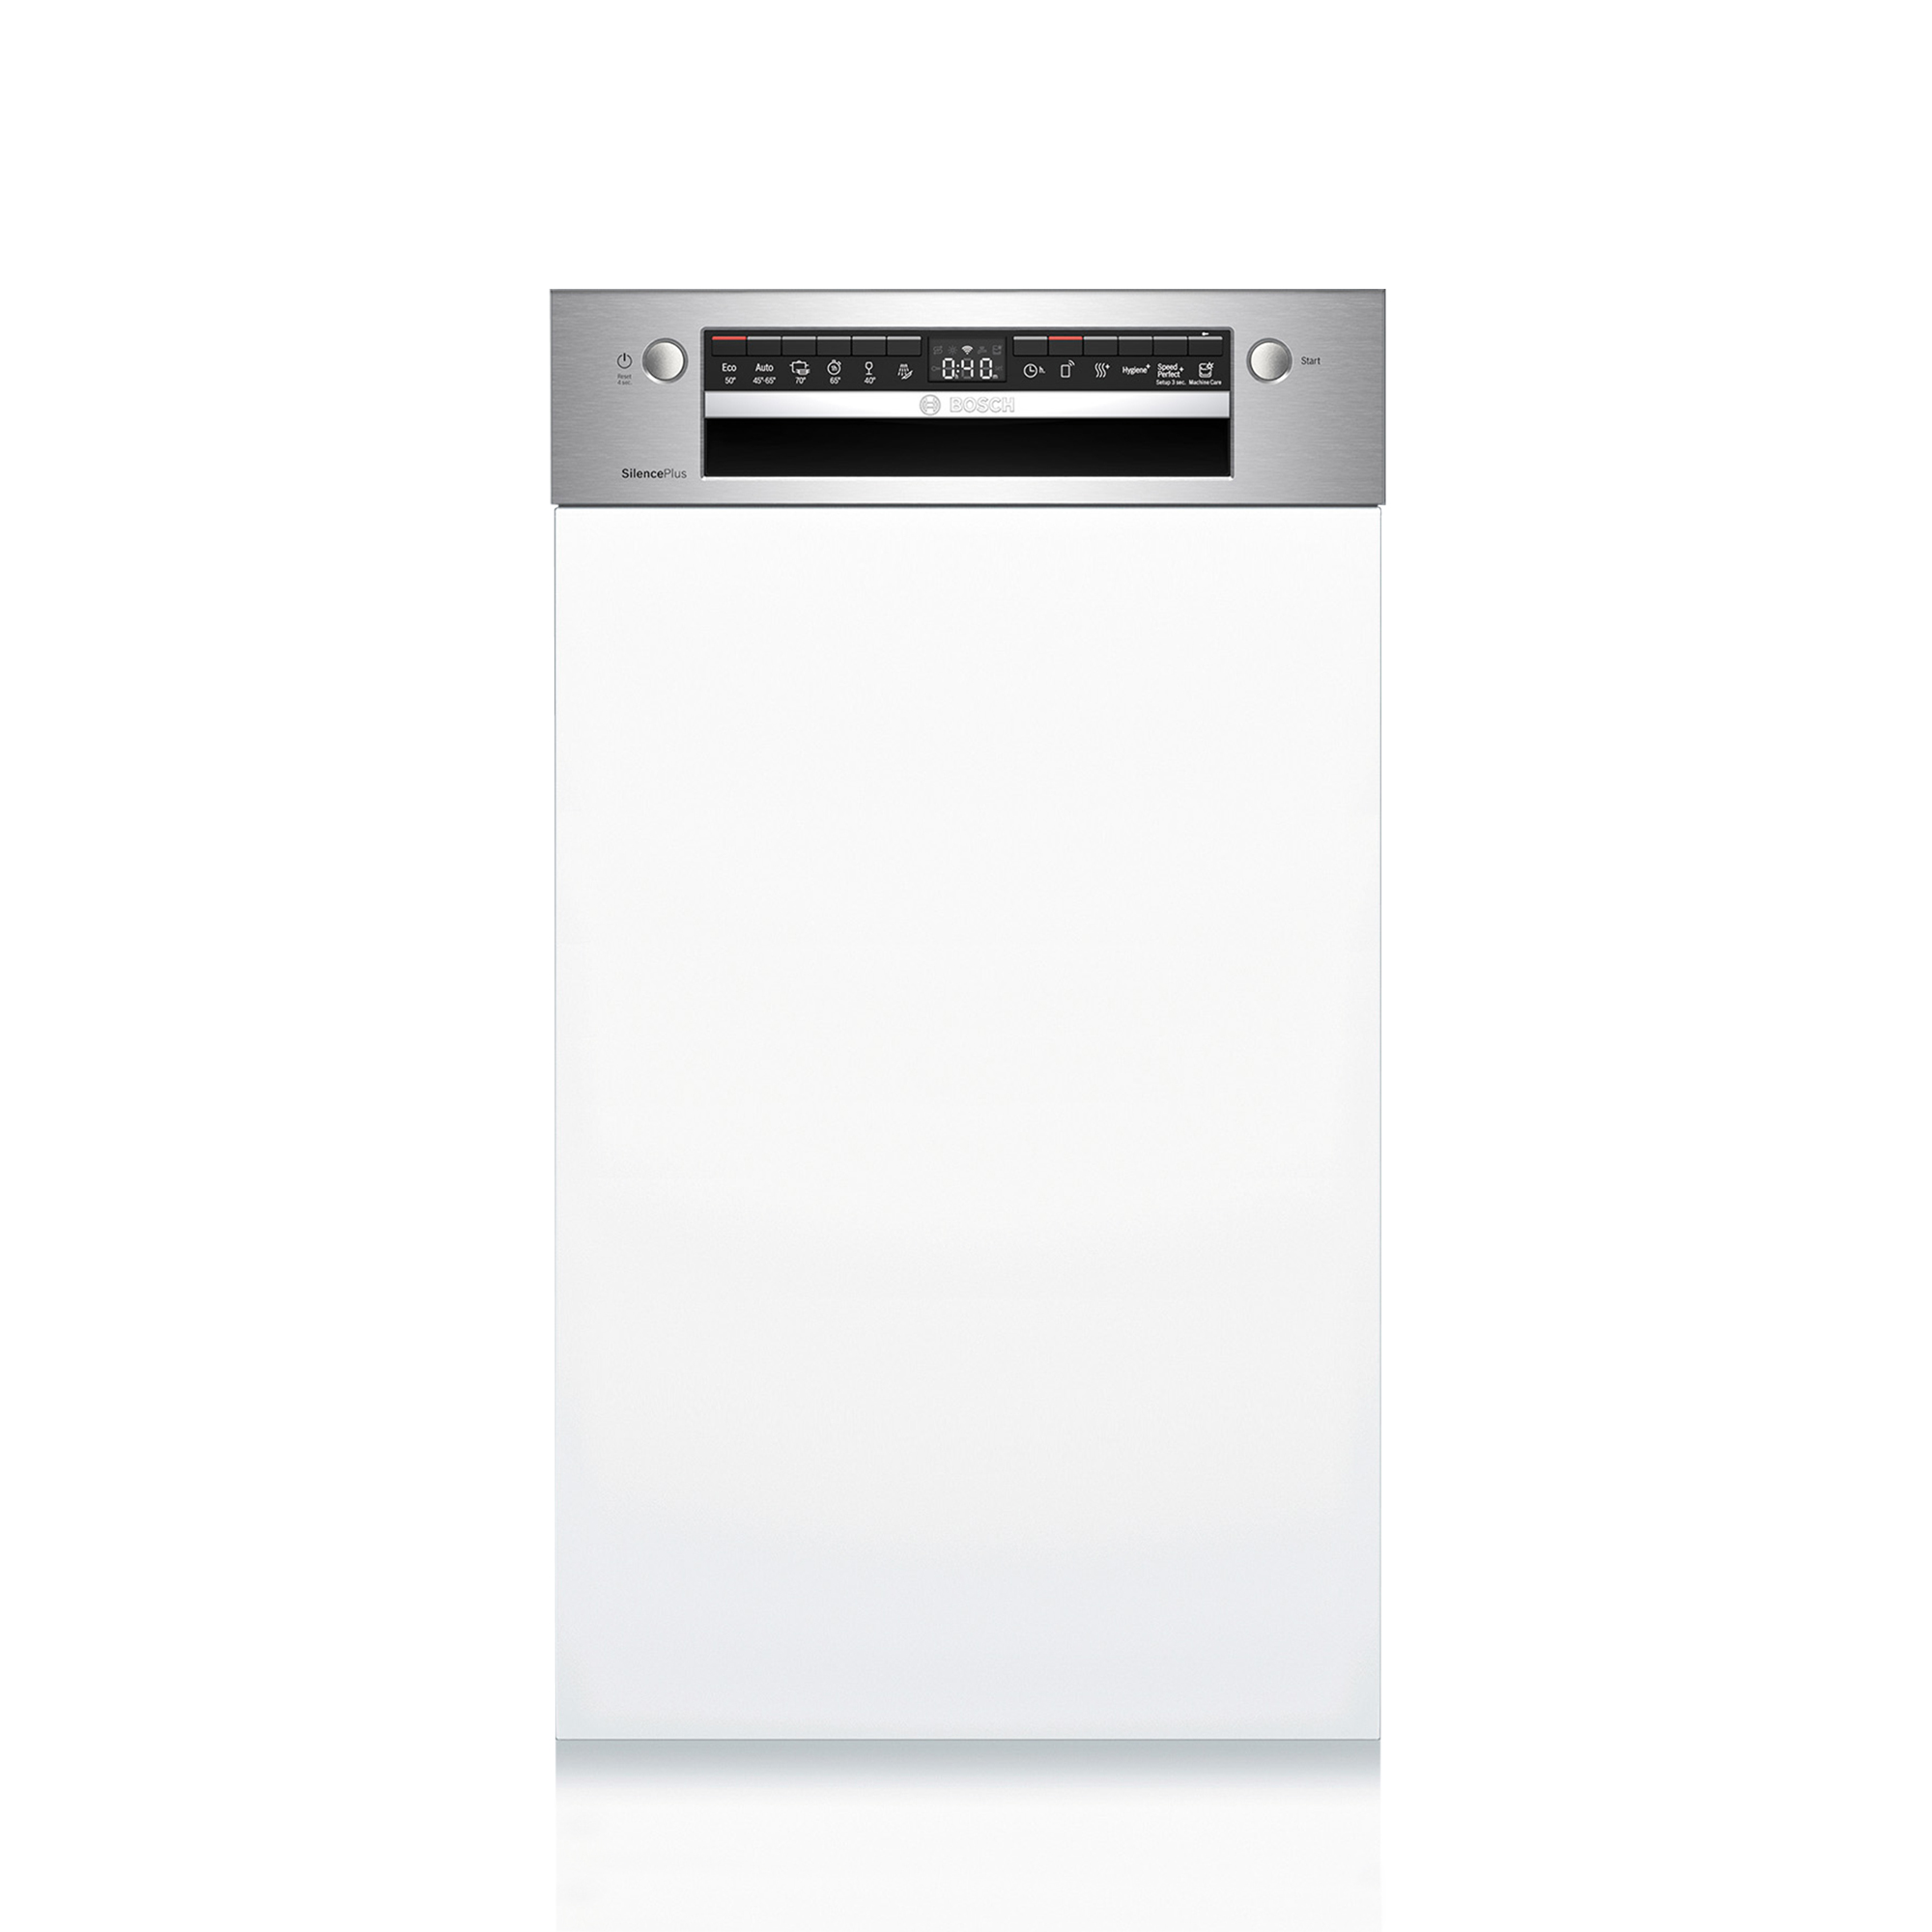 ビルトイン食洗機 フロントオープン W450 前面操作タイプ（本体のみ） KB-PT004-02-G234